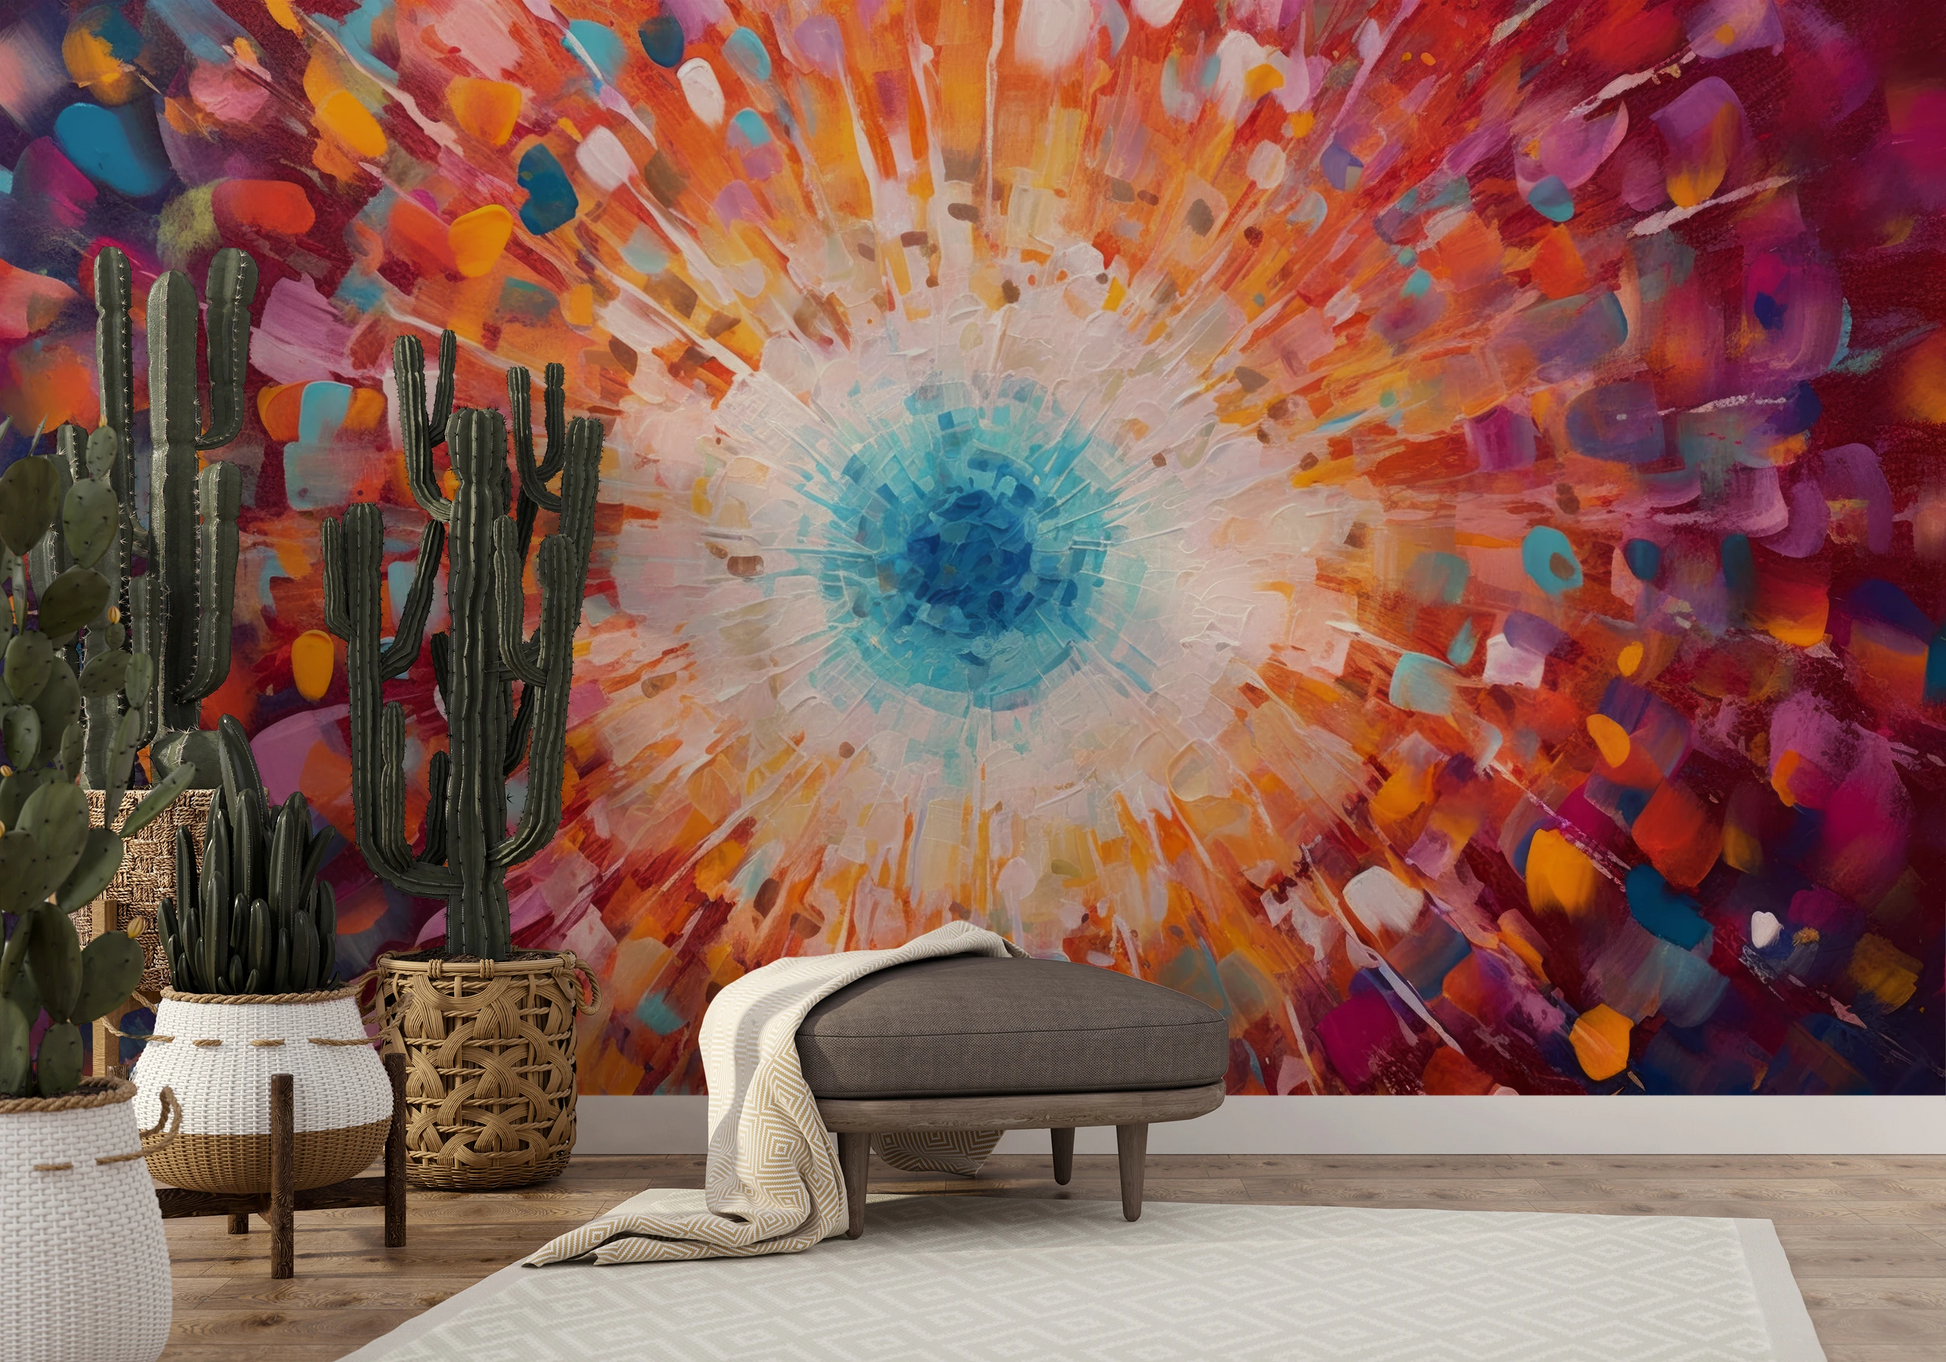 Fototapeta malowana o nazwie Vibrant Mosaic pokazana w aranżacji wnętrza.